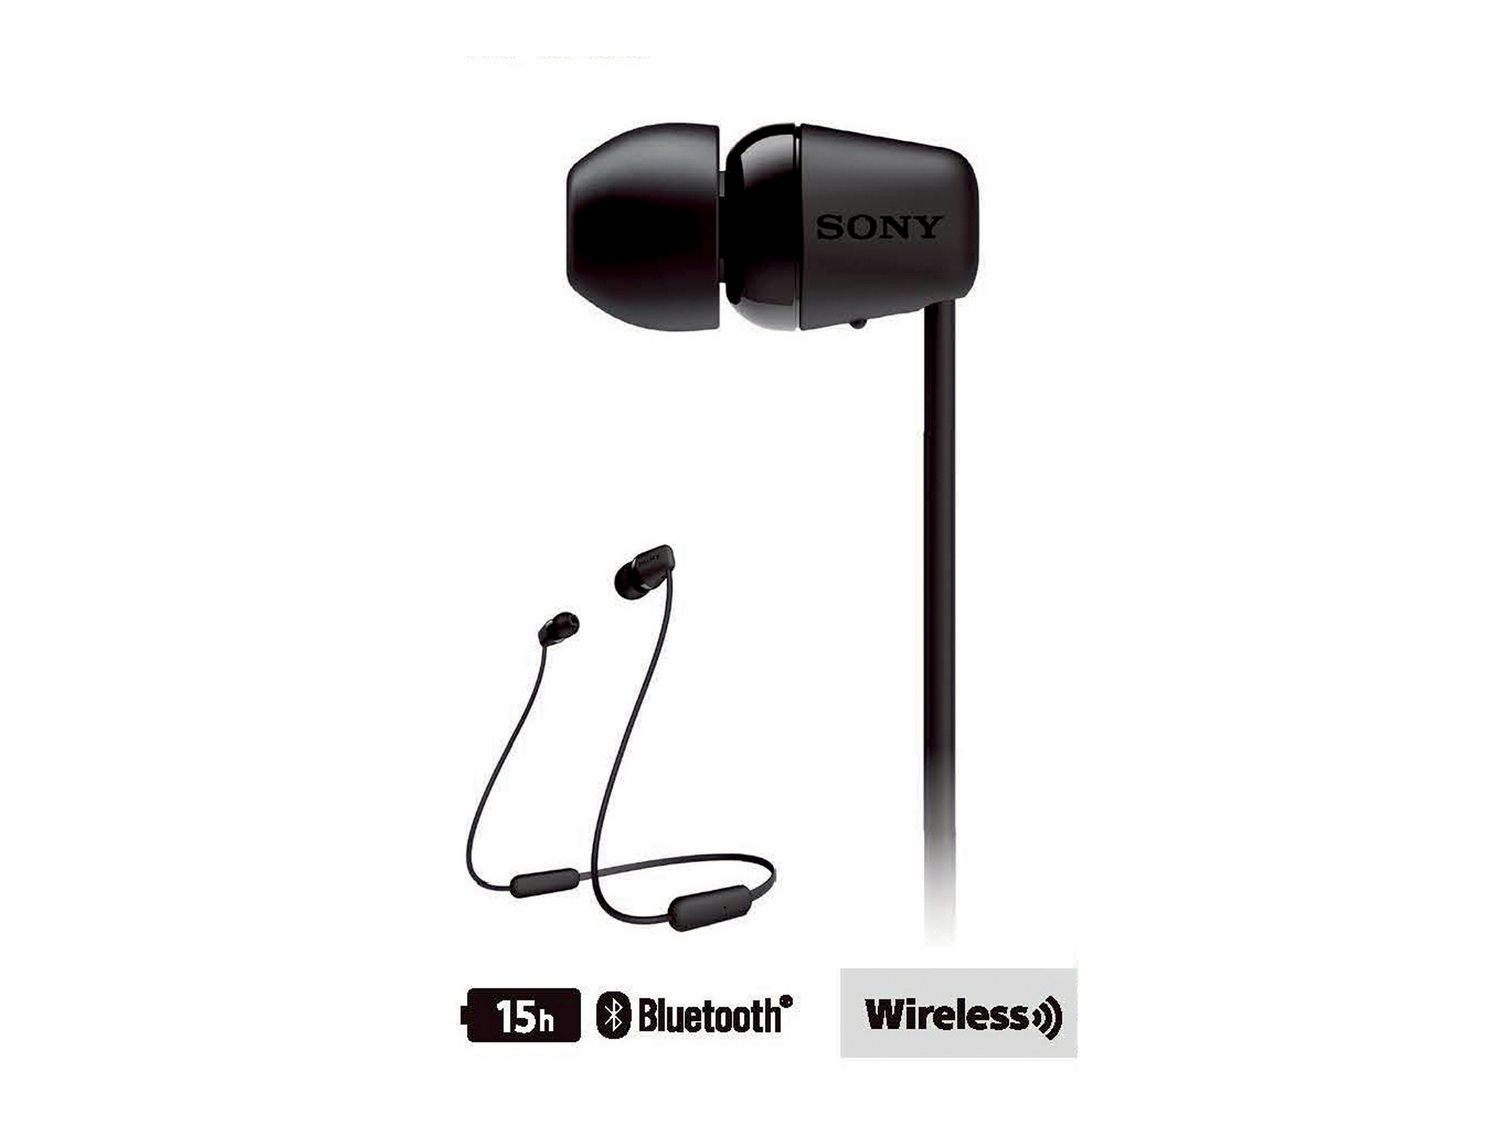 Cuffie audio Bluetooth Sony, prezzo 27.99 &#8364; 
- Chiamate in vivavoce con ...